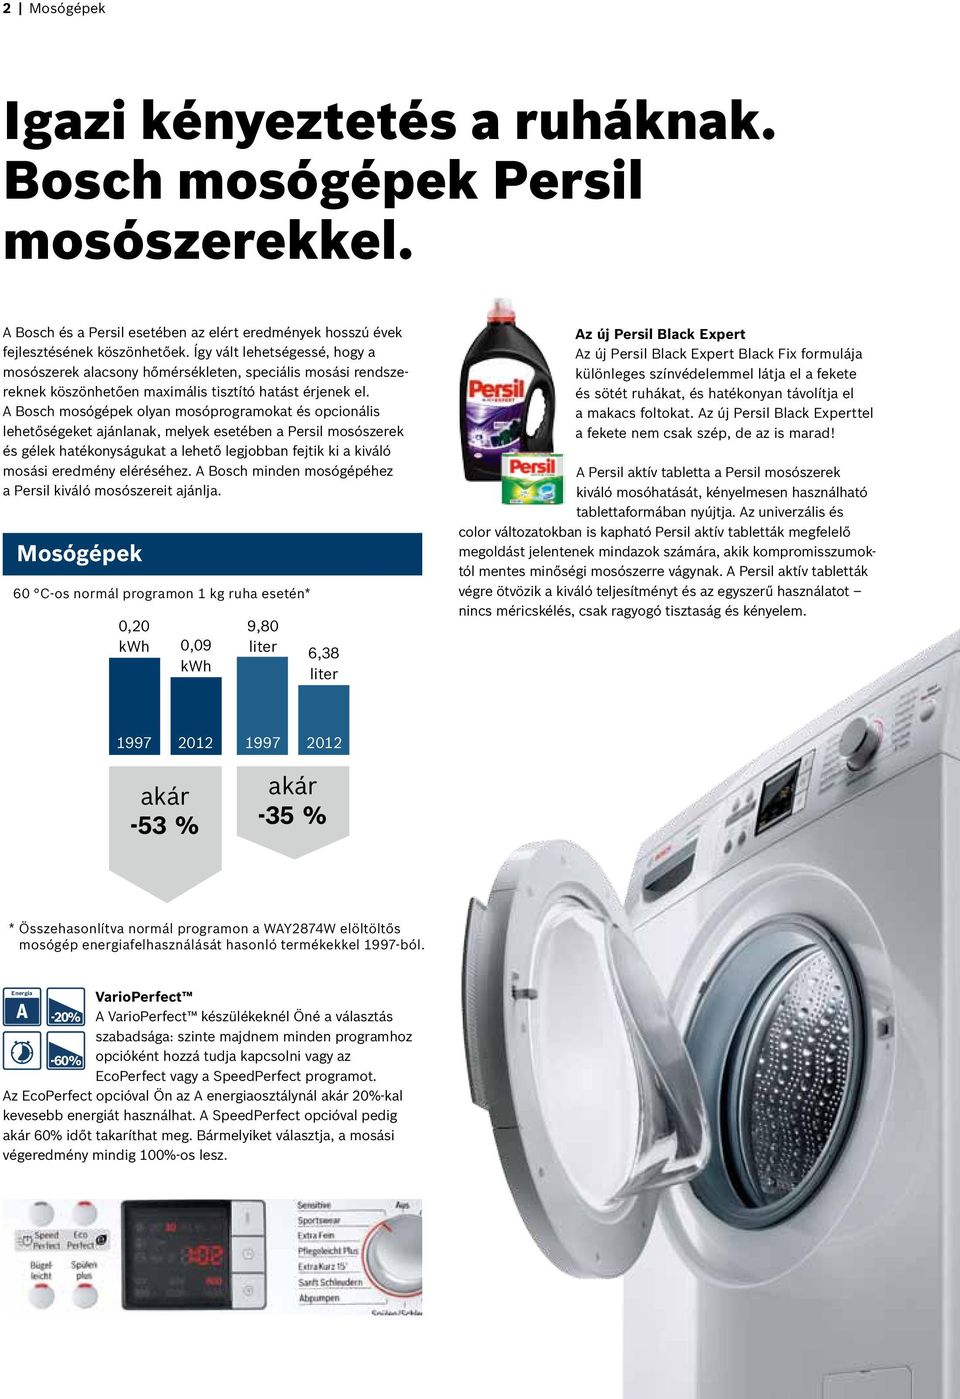 A Bosch mosógépek olyan mosóprogramokat és opcionális lehetőségeket ajánlanak, melyek esetében a Persil mosószerek és gélek hatékonyságukat a lehető legjobban fejtik ki a kiváló mosási eredmény